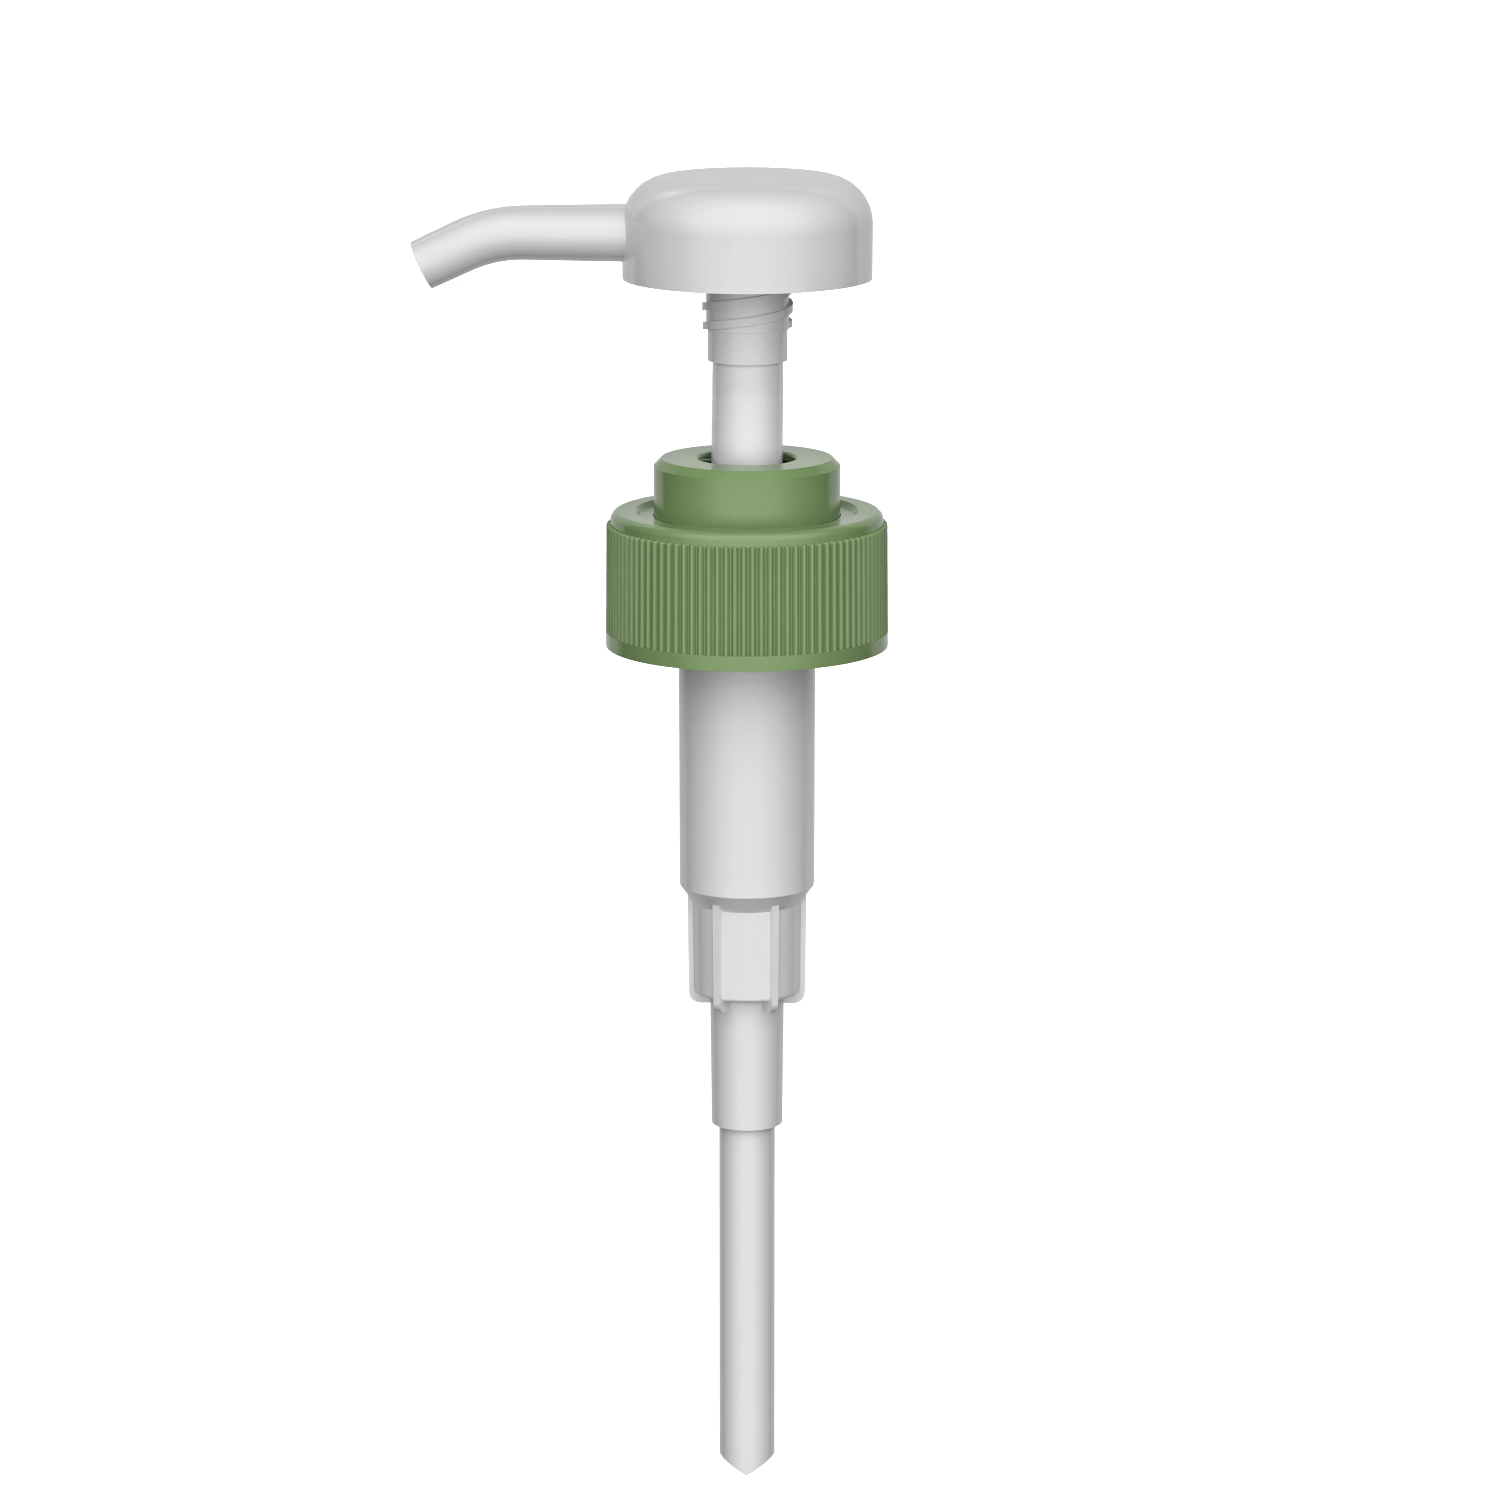 HD-608C 31/410 parafuso dispensador de saída de shampoo de lavagem de alta dosagem 3.5-4.0CC bomba de loção